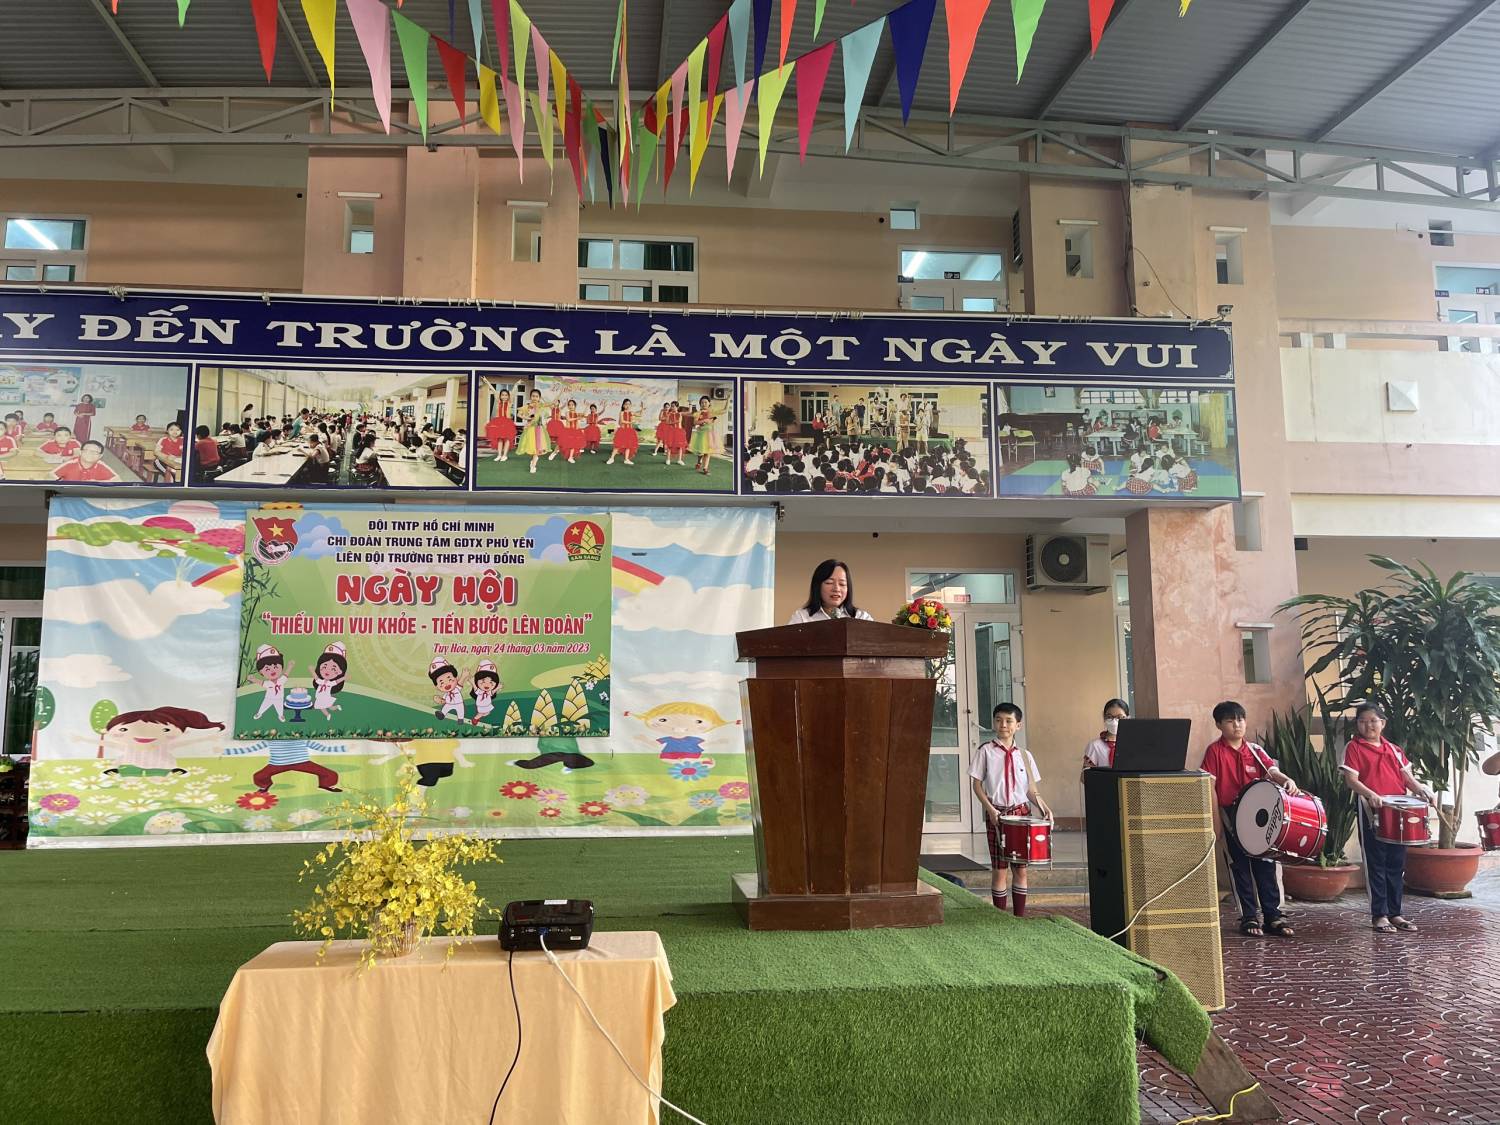 Chi đoàn Trung tâm GDTX Phú Yên phối hợp với Liên chi đội Trường Tiểu học Bán trú Phù Đổng Tổ chức ngày hội ‘Thiếu nhi vui khỏe - Tiến bước lên đoàn’